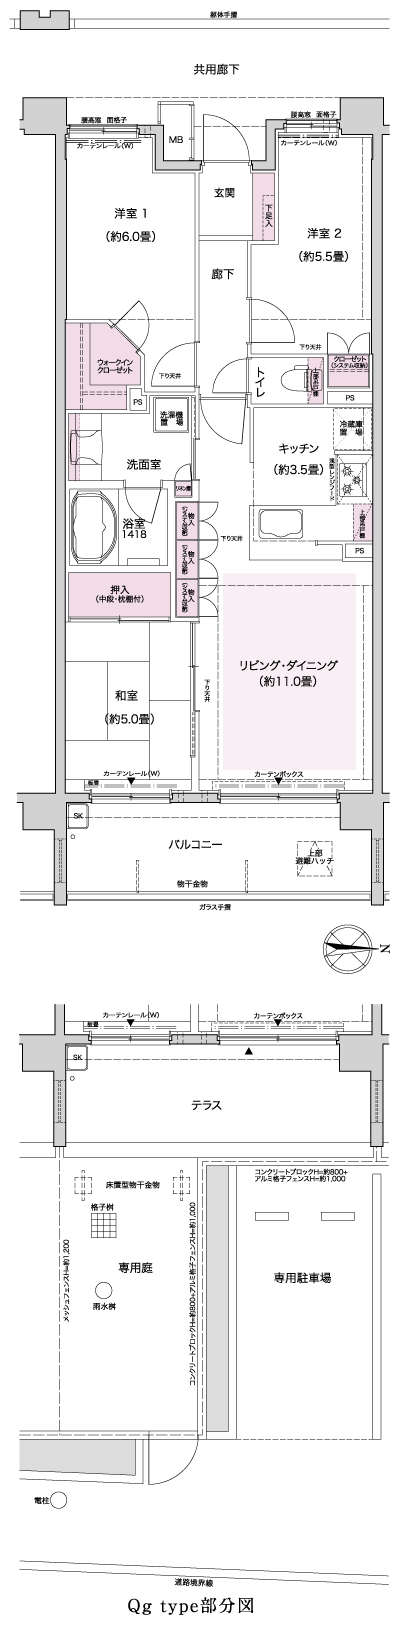 Floor: 3LDK, occupied area: 70.31 sq m